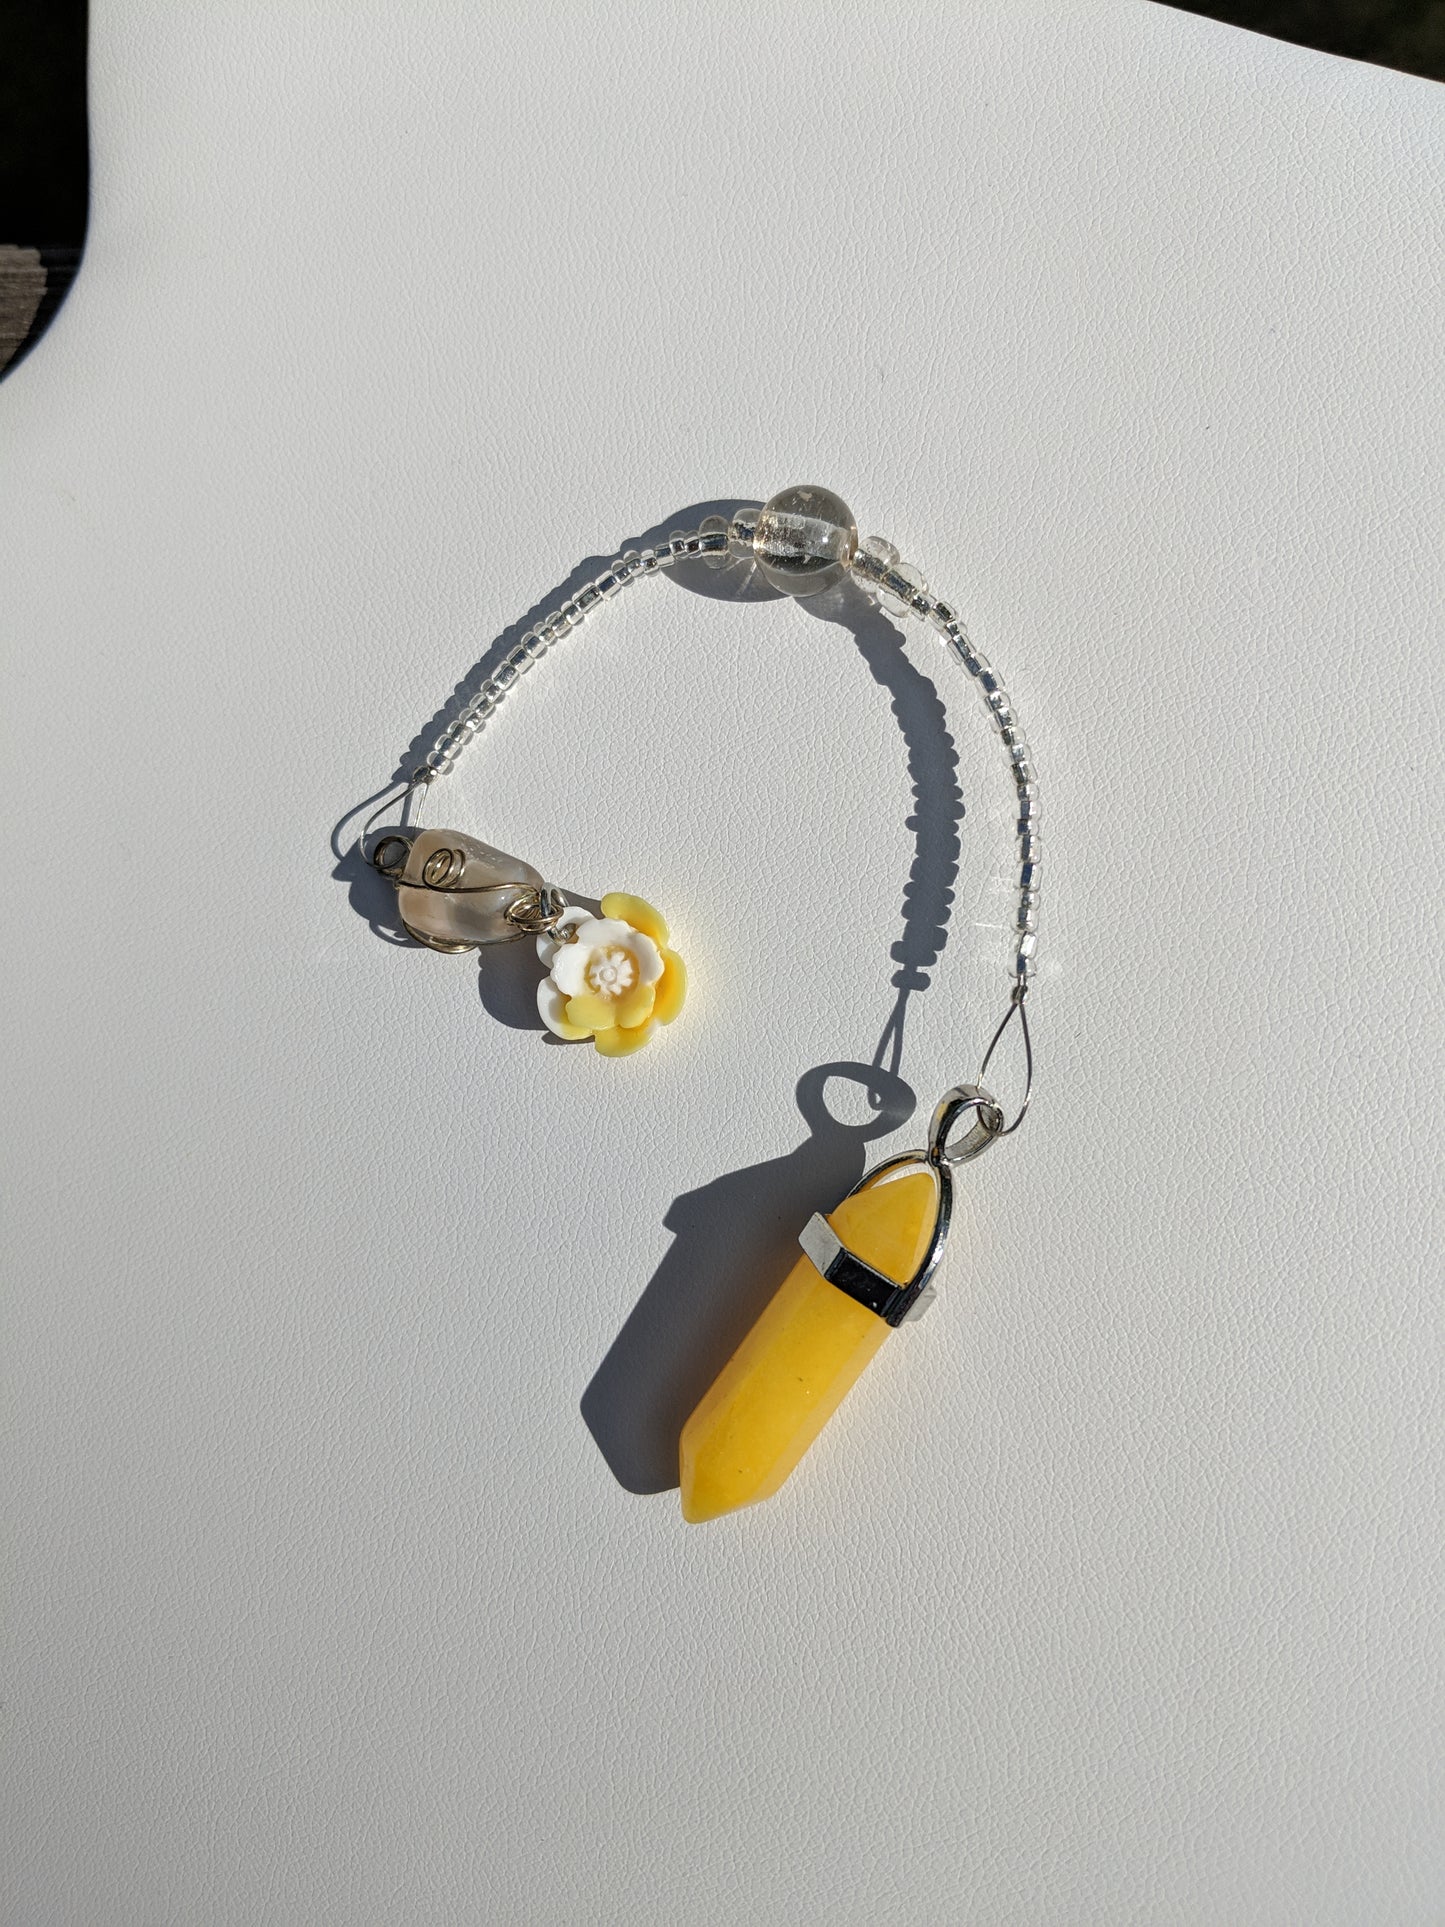 Sunshine Yellow Jade Pendulum (Reiki blessed)